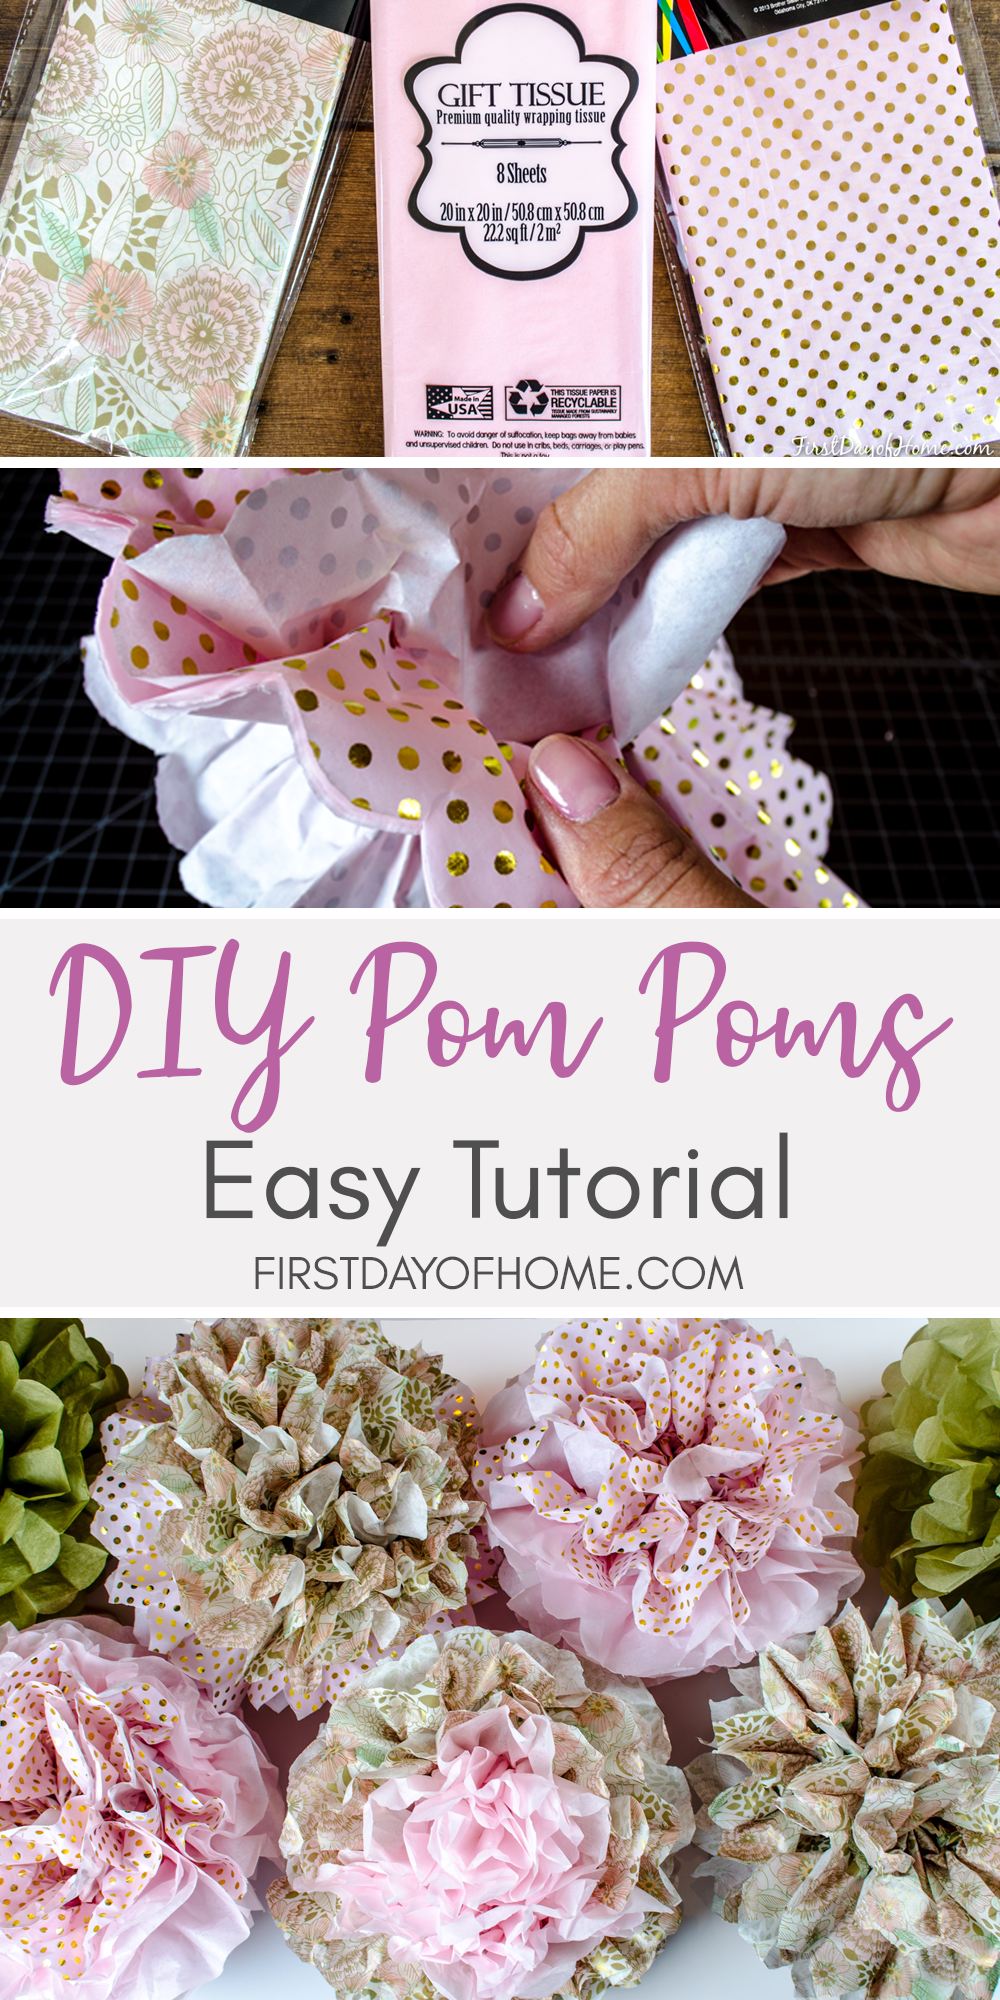 DIY Tissue Paper Pom Poms - DIY Tissue Paper Pom Poms -   16 diy Paper pom poms ideas